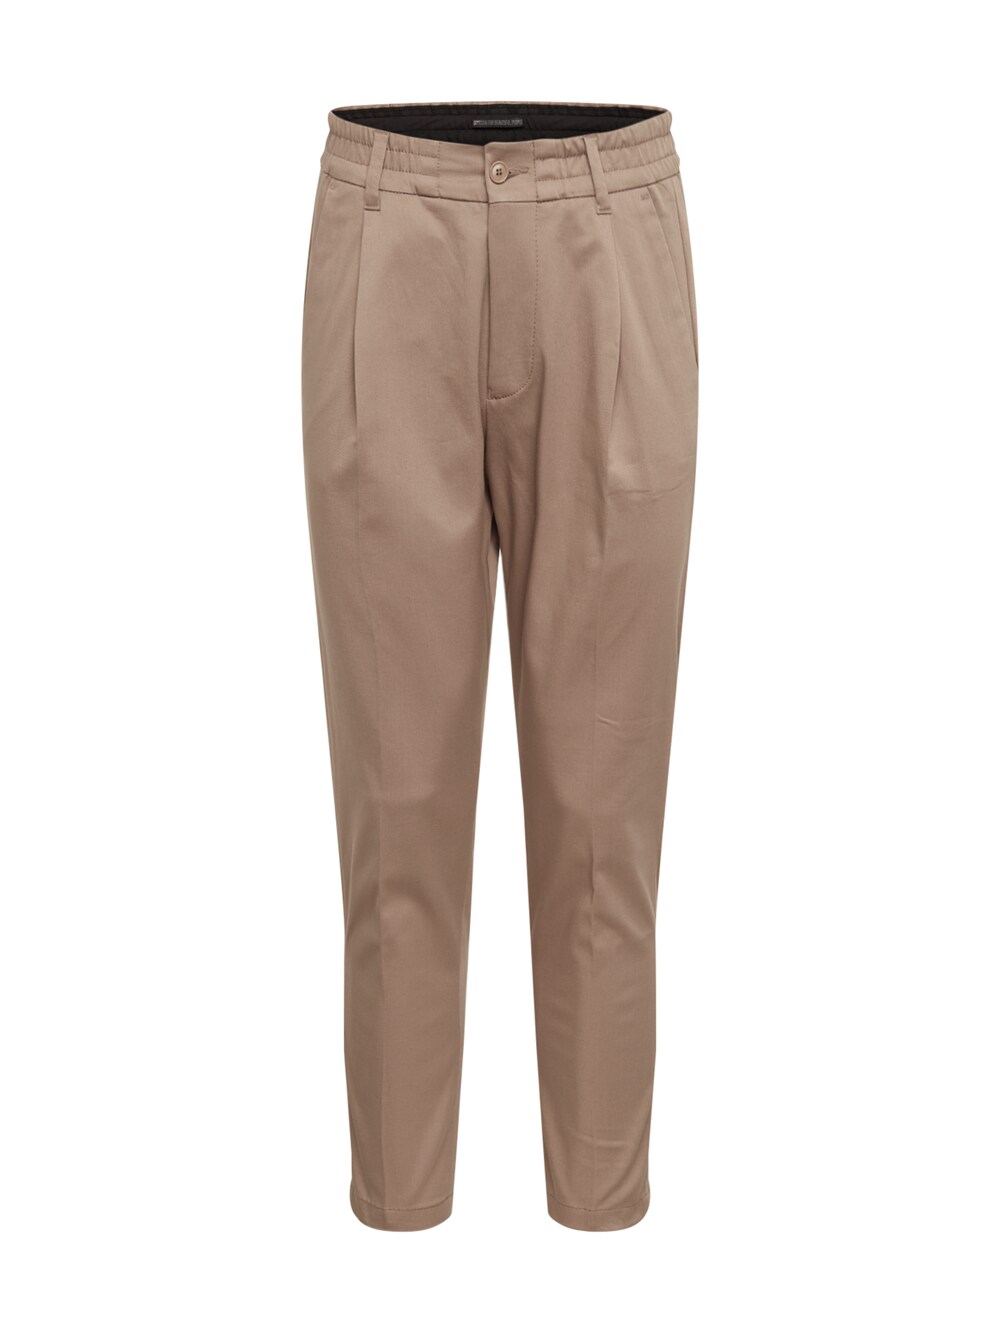 Обычные брюки Drykorn CHASY, коричневый брюки chasy drykorn цвет grey